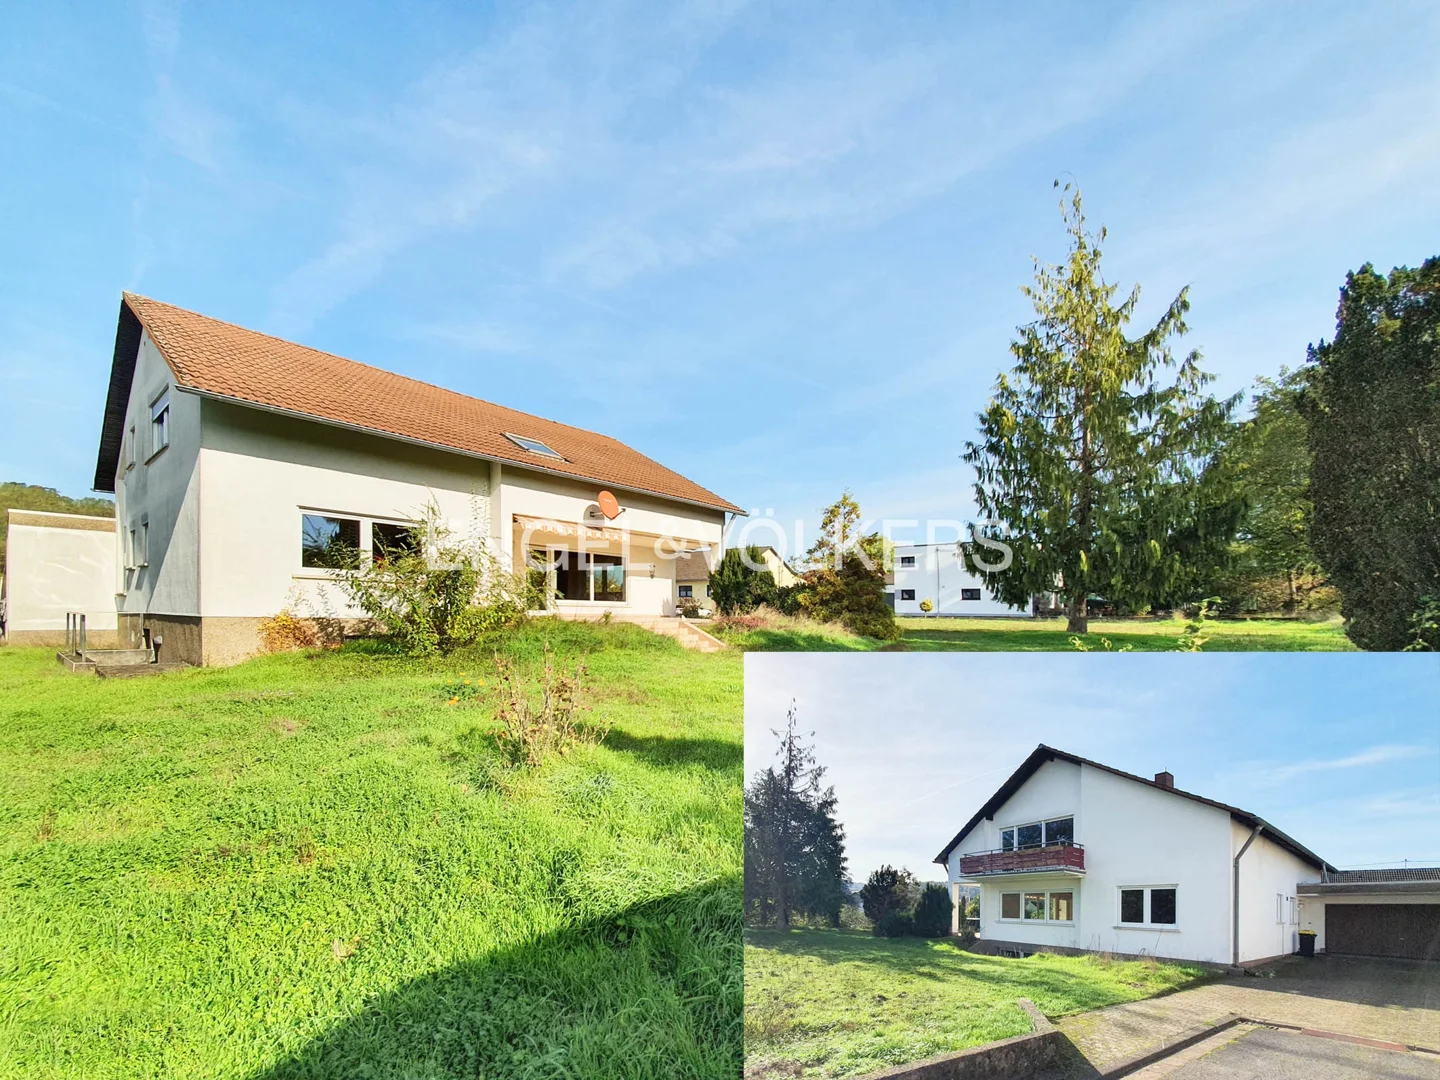 1-2 Familienhaus in Siersburg mit optional zusätzlichem Baugrundstück